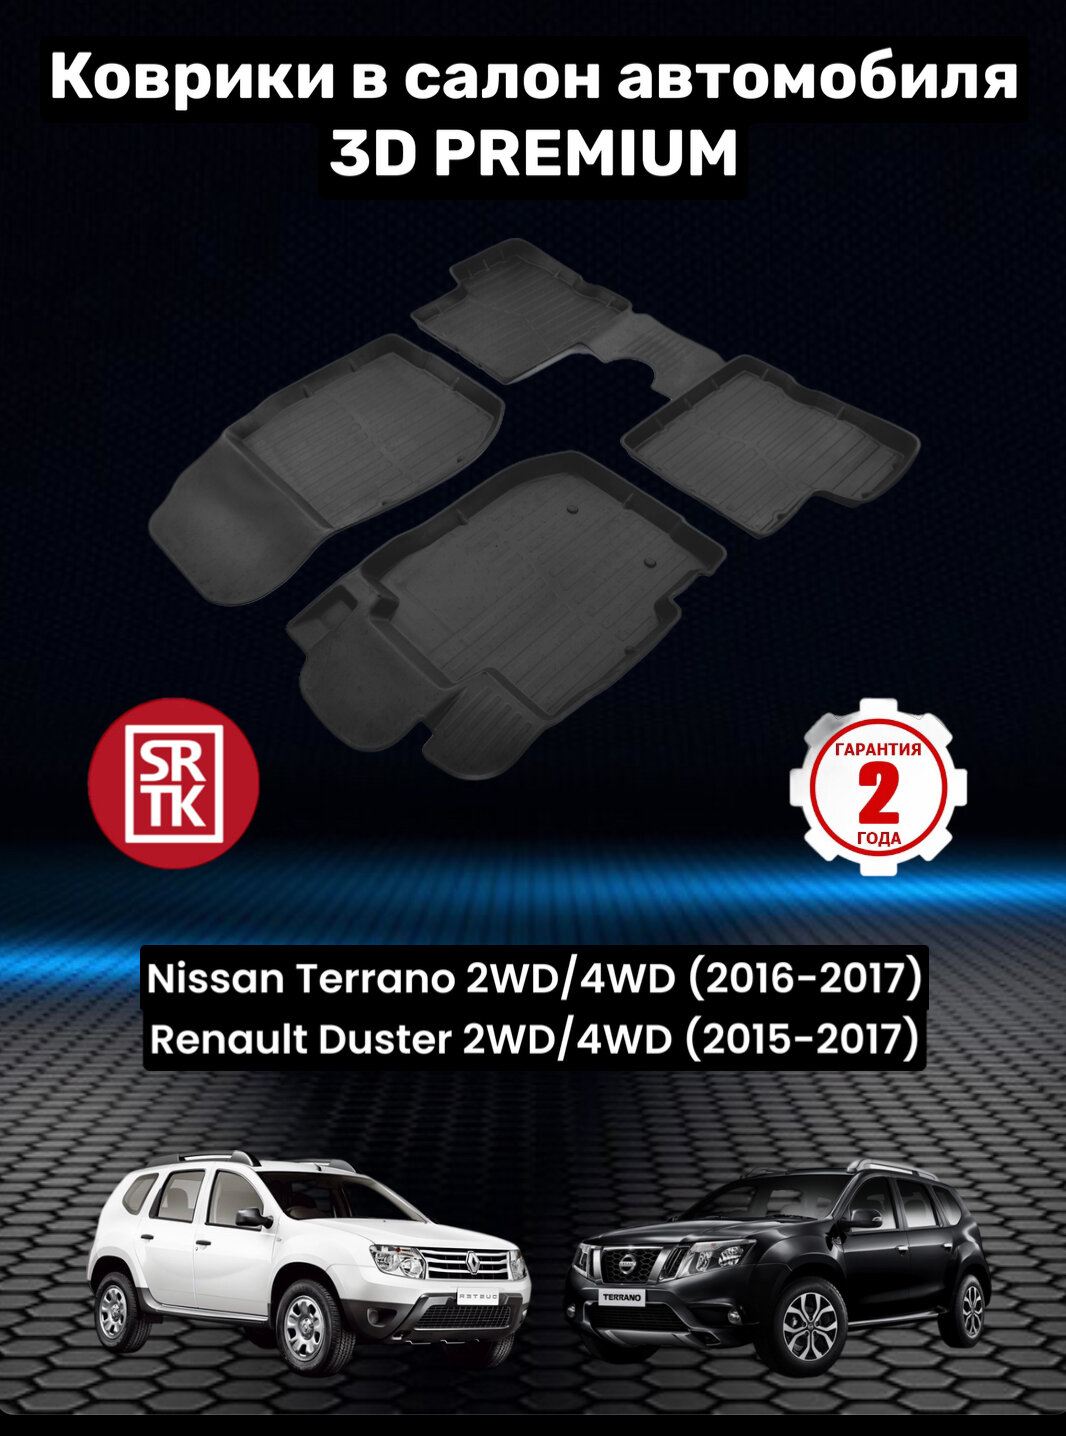 Ковры резиновые 3D Premium Рено Дастер 2015-2017/Ниссан Террано/Renault Duster/Nissan Terrano (2016-17) SRTK (Саранск) комплект в cалон